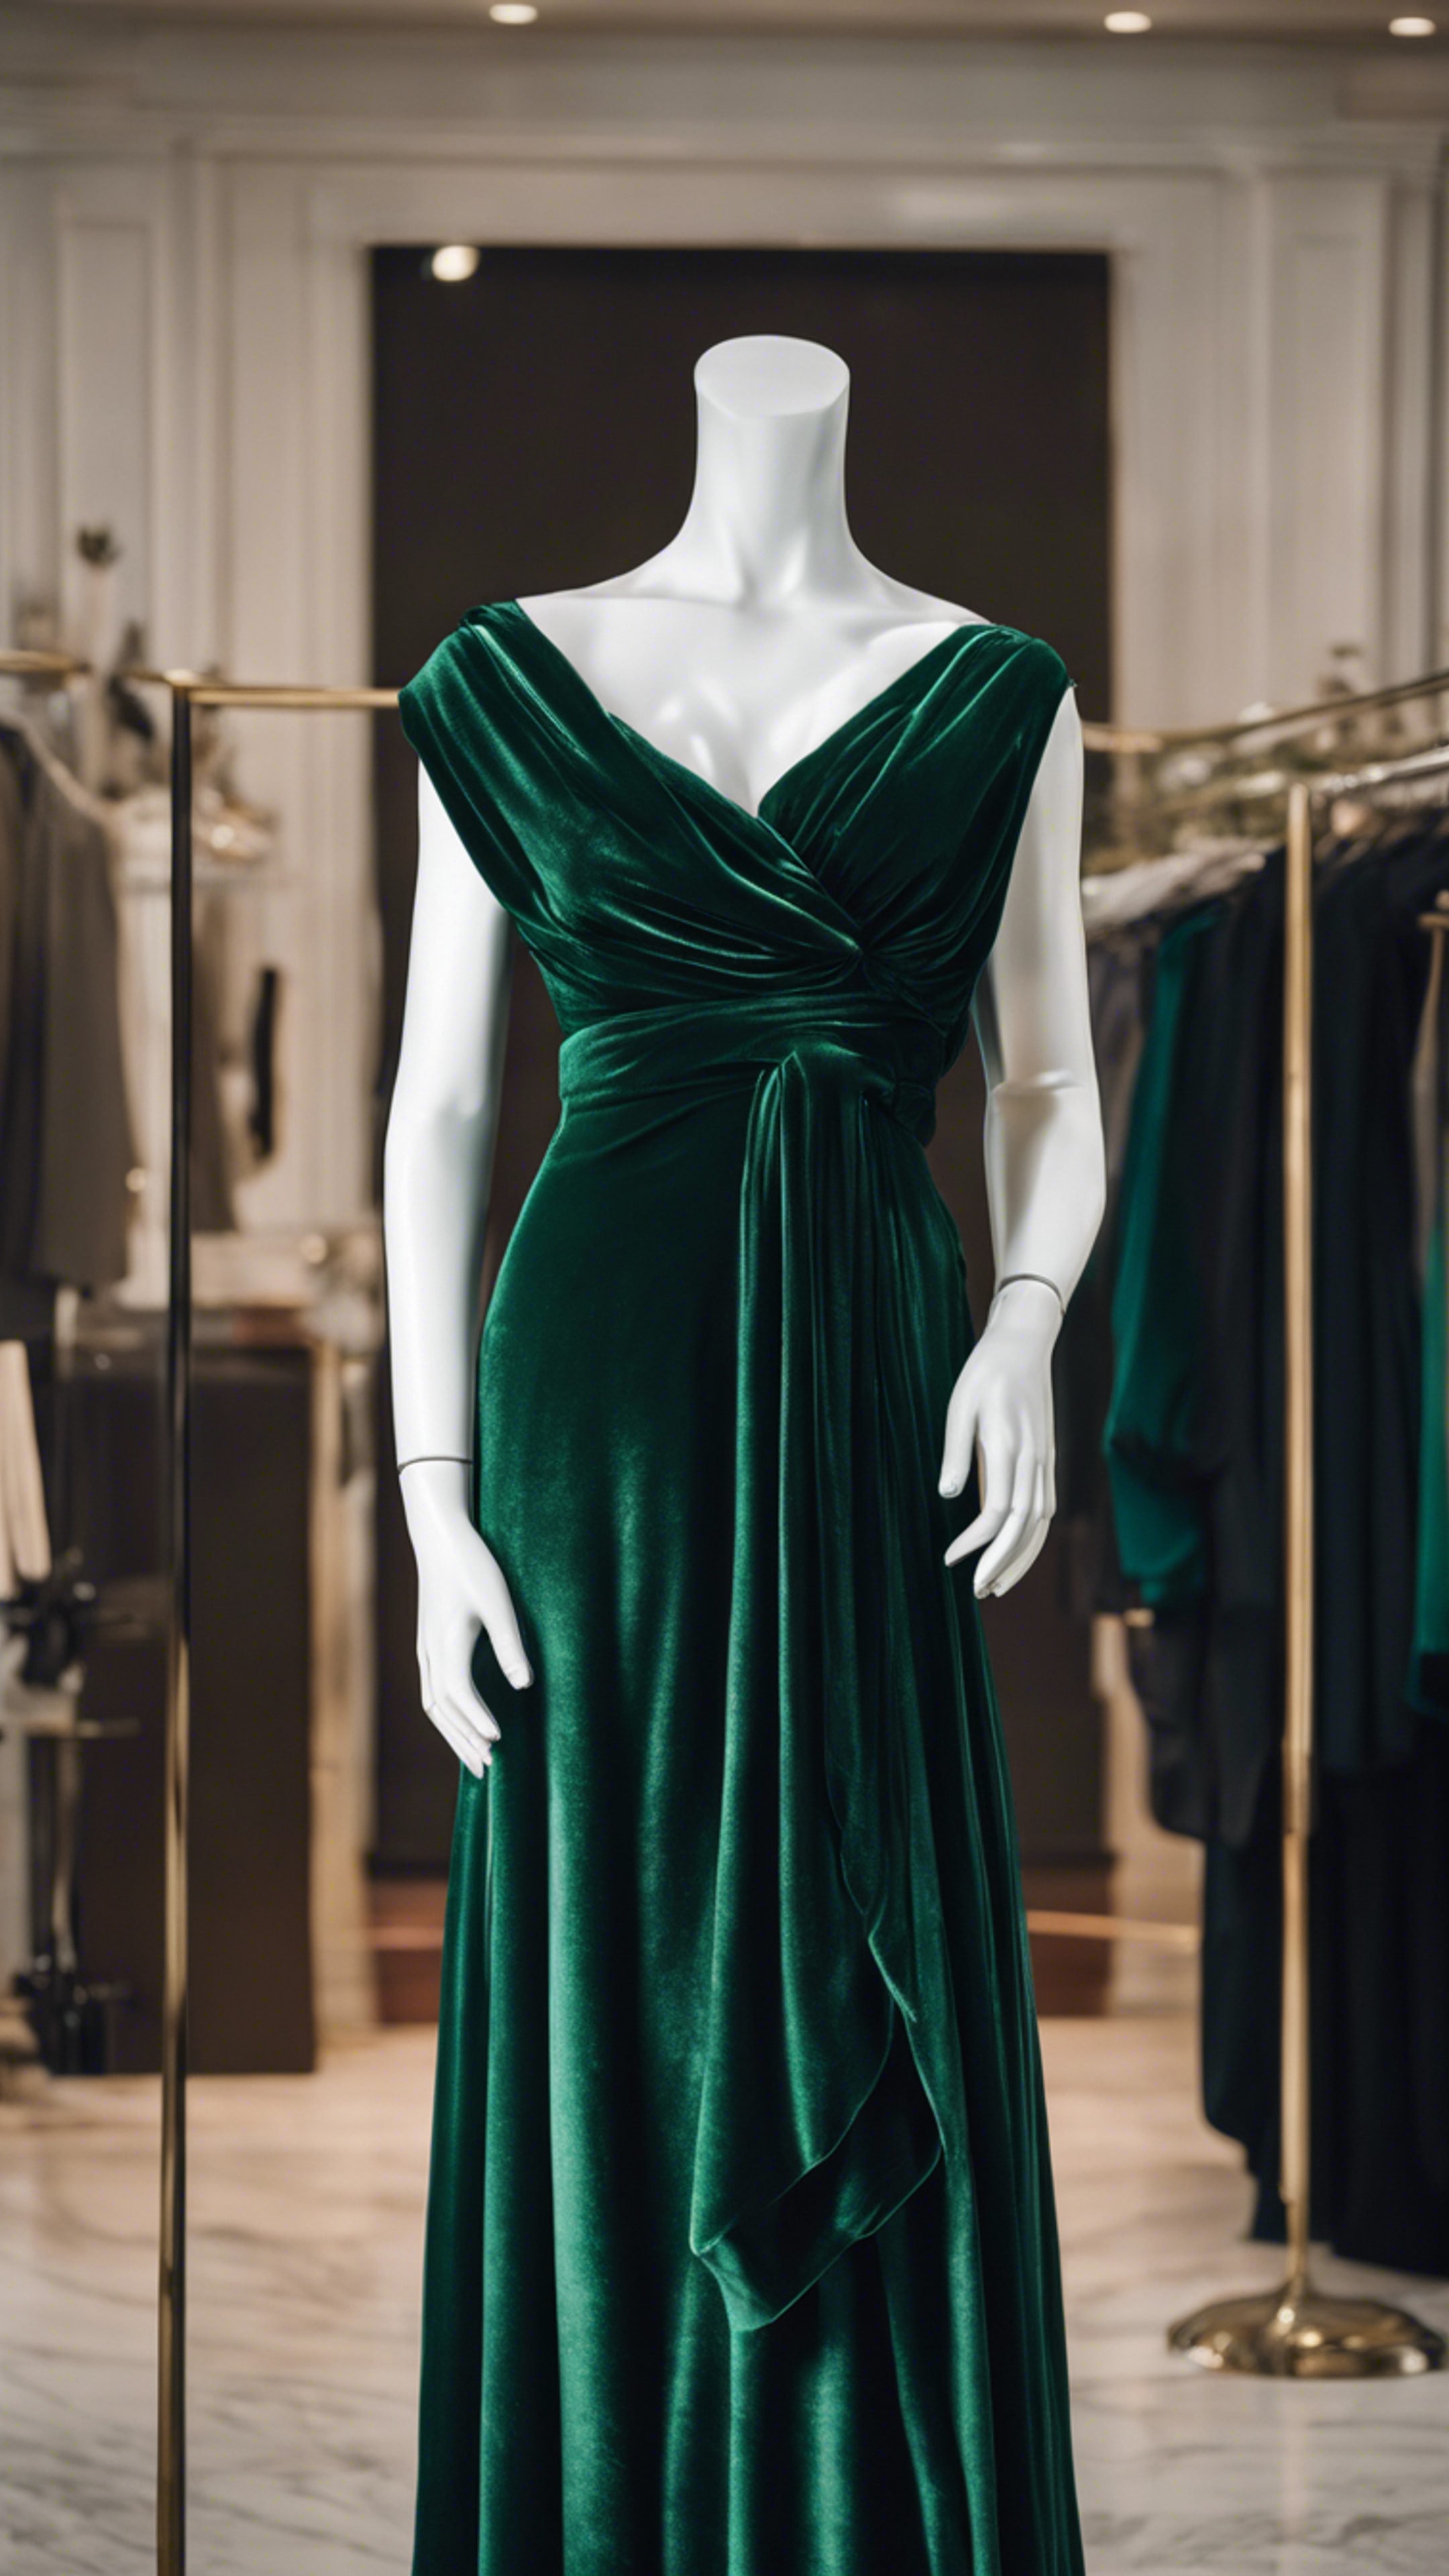 A classy dark green velvet dress draped on a mannequin. Tapeta[4958bfaa75d040bb9909]